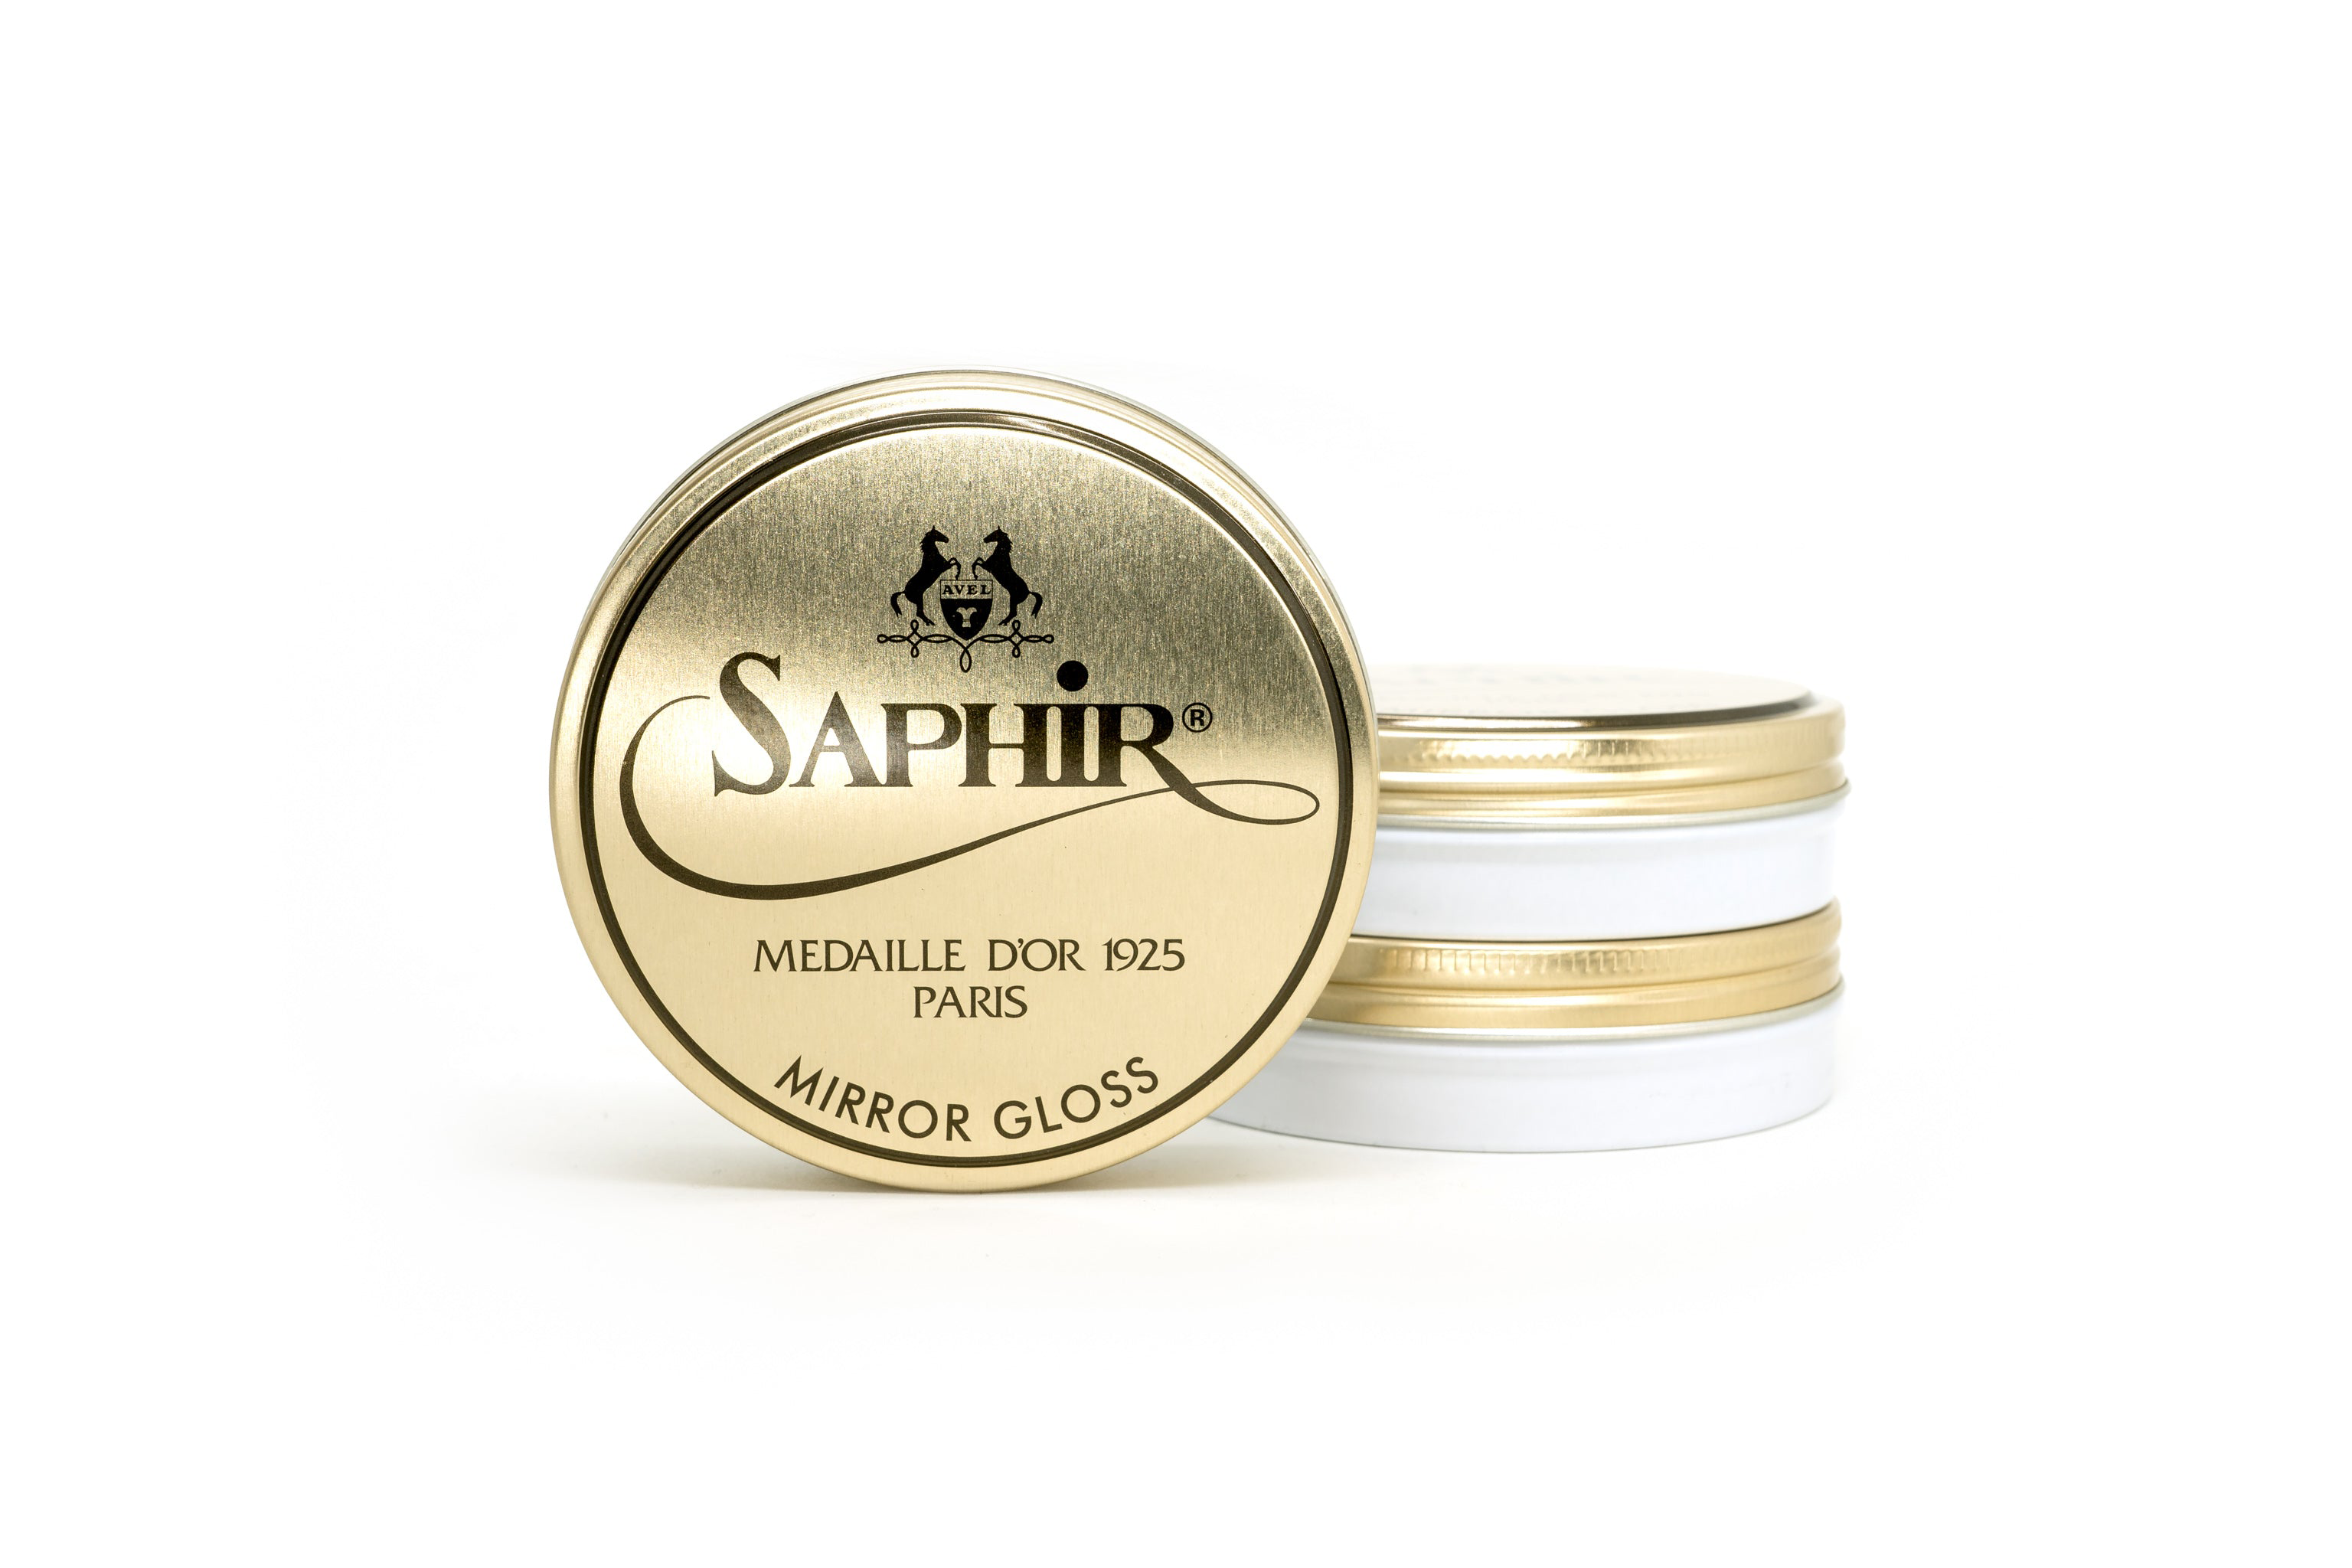 Saphir Pate de Luxe Wax Shoe Polish 100ml : Saphir Medaille D'OR : Saphir  Shoe Polish